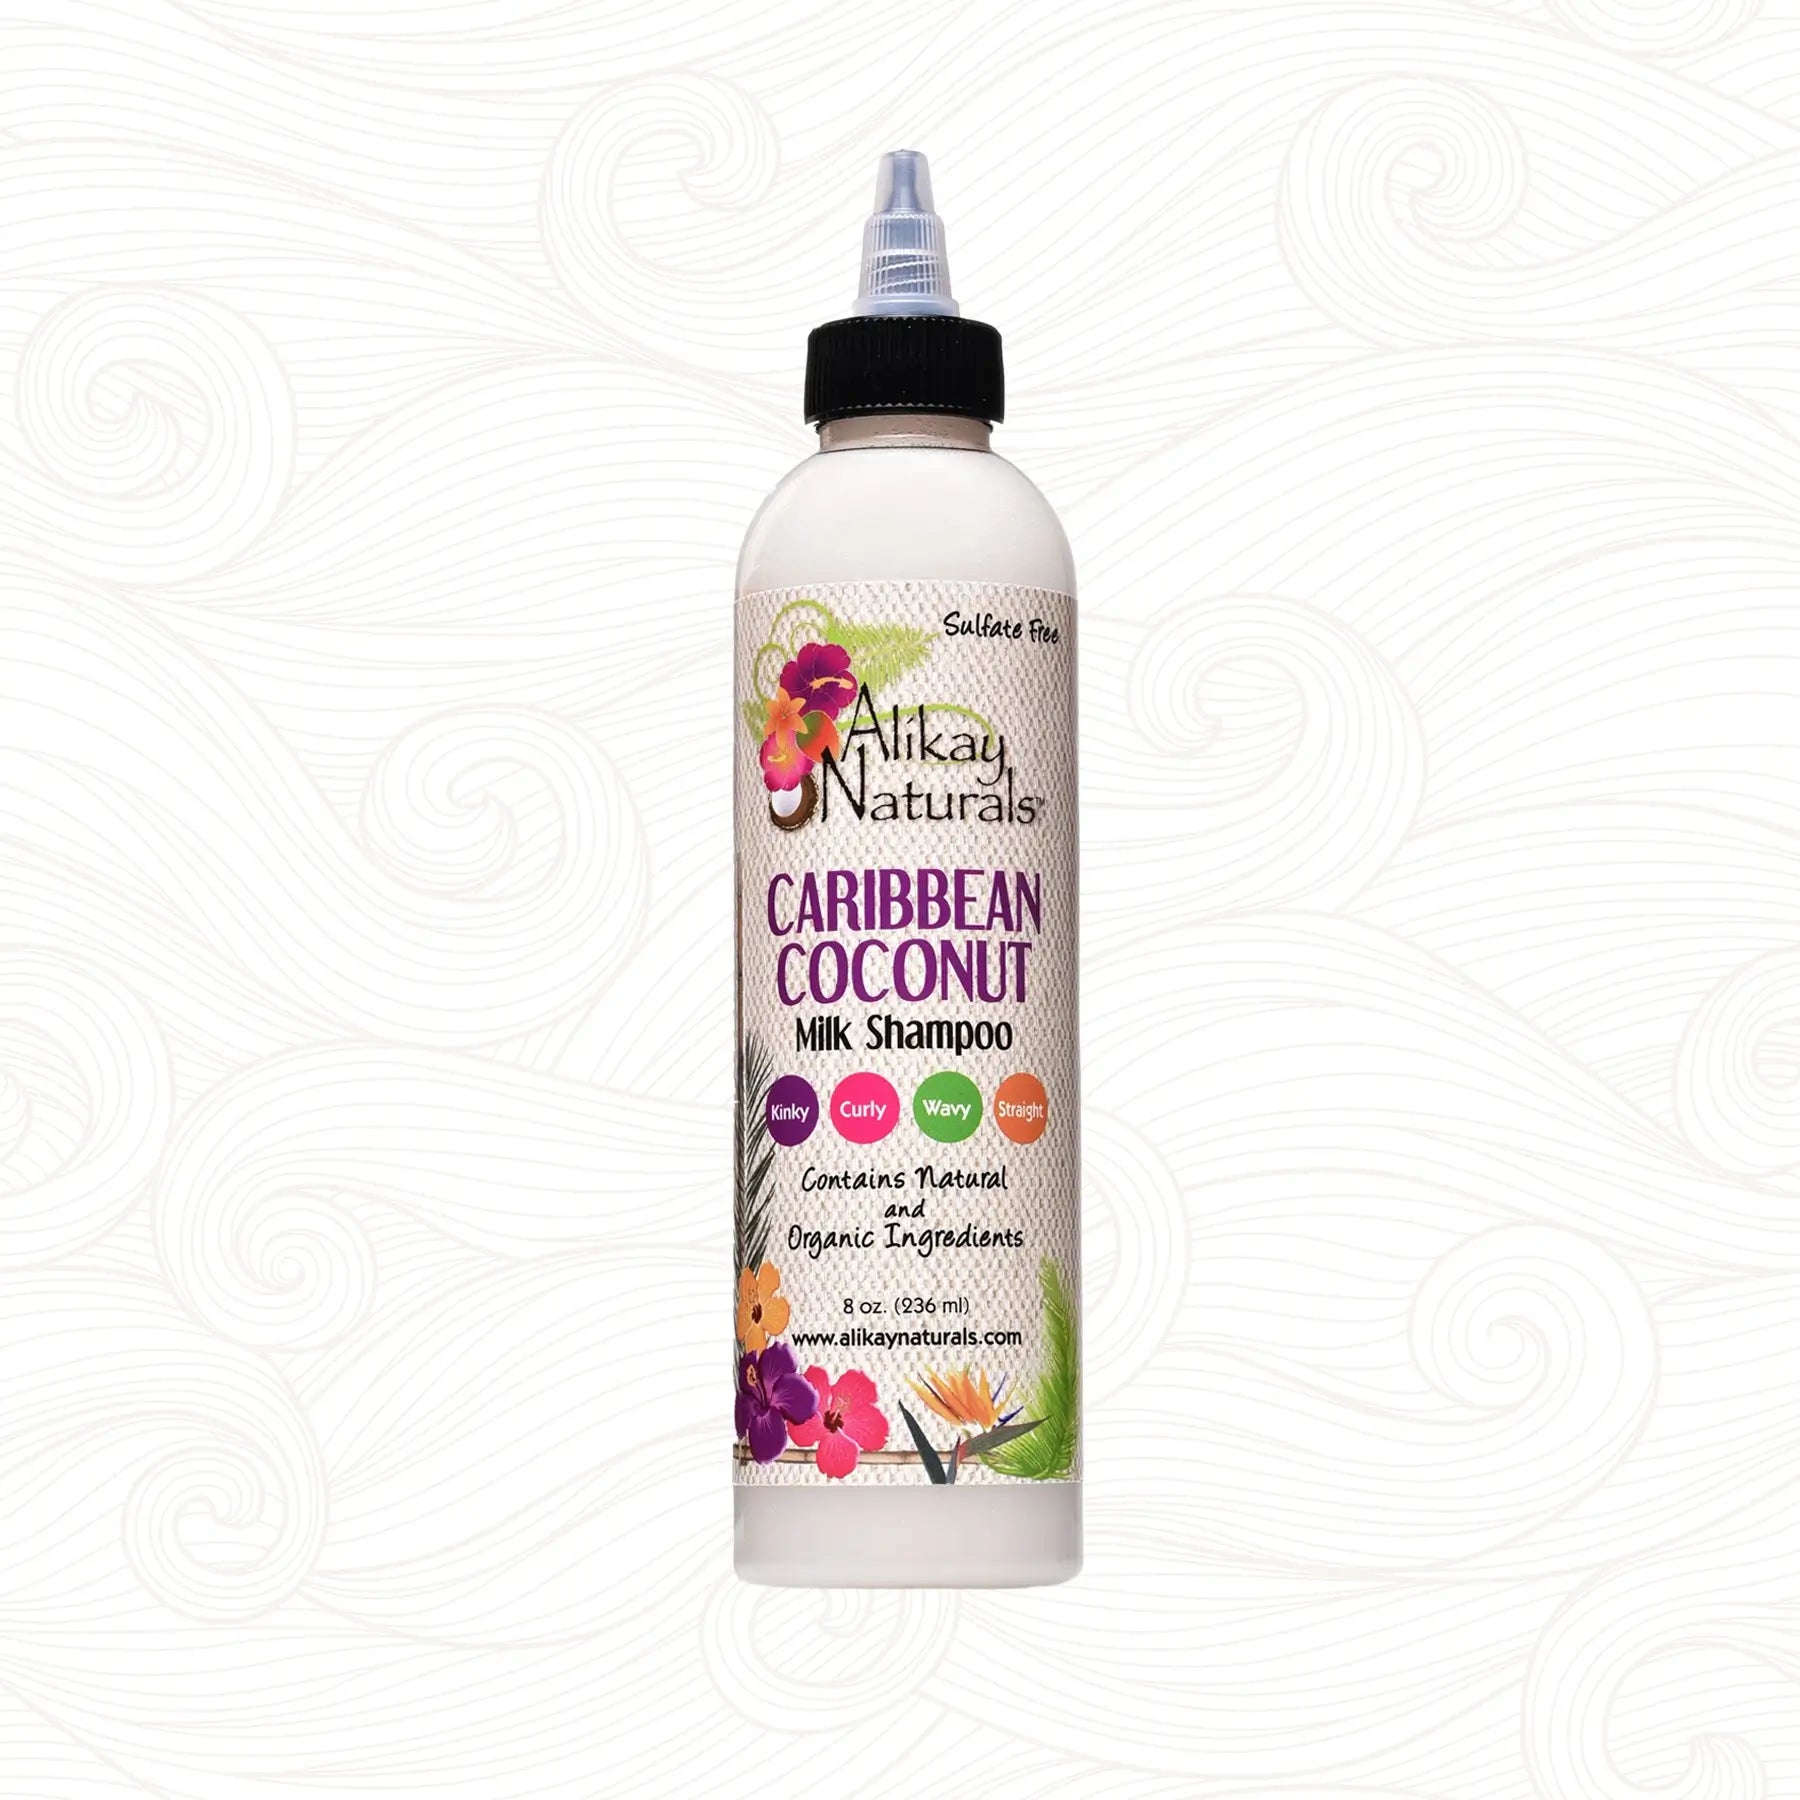 Alikay Naturals | Caribbean Coconut Milk Shampoo /ab 59ml Shampoo Alikay